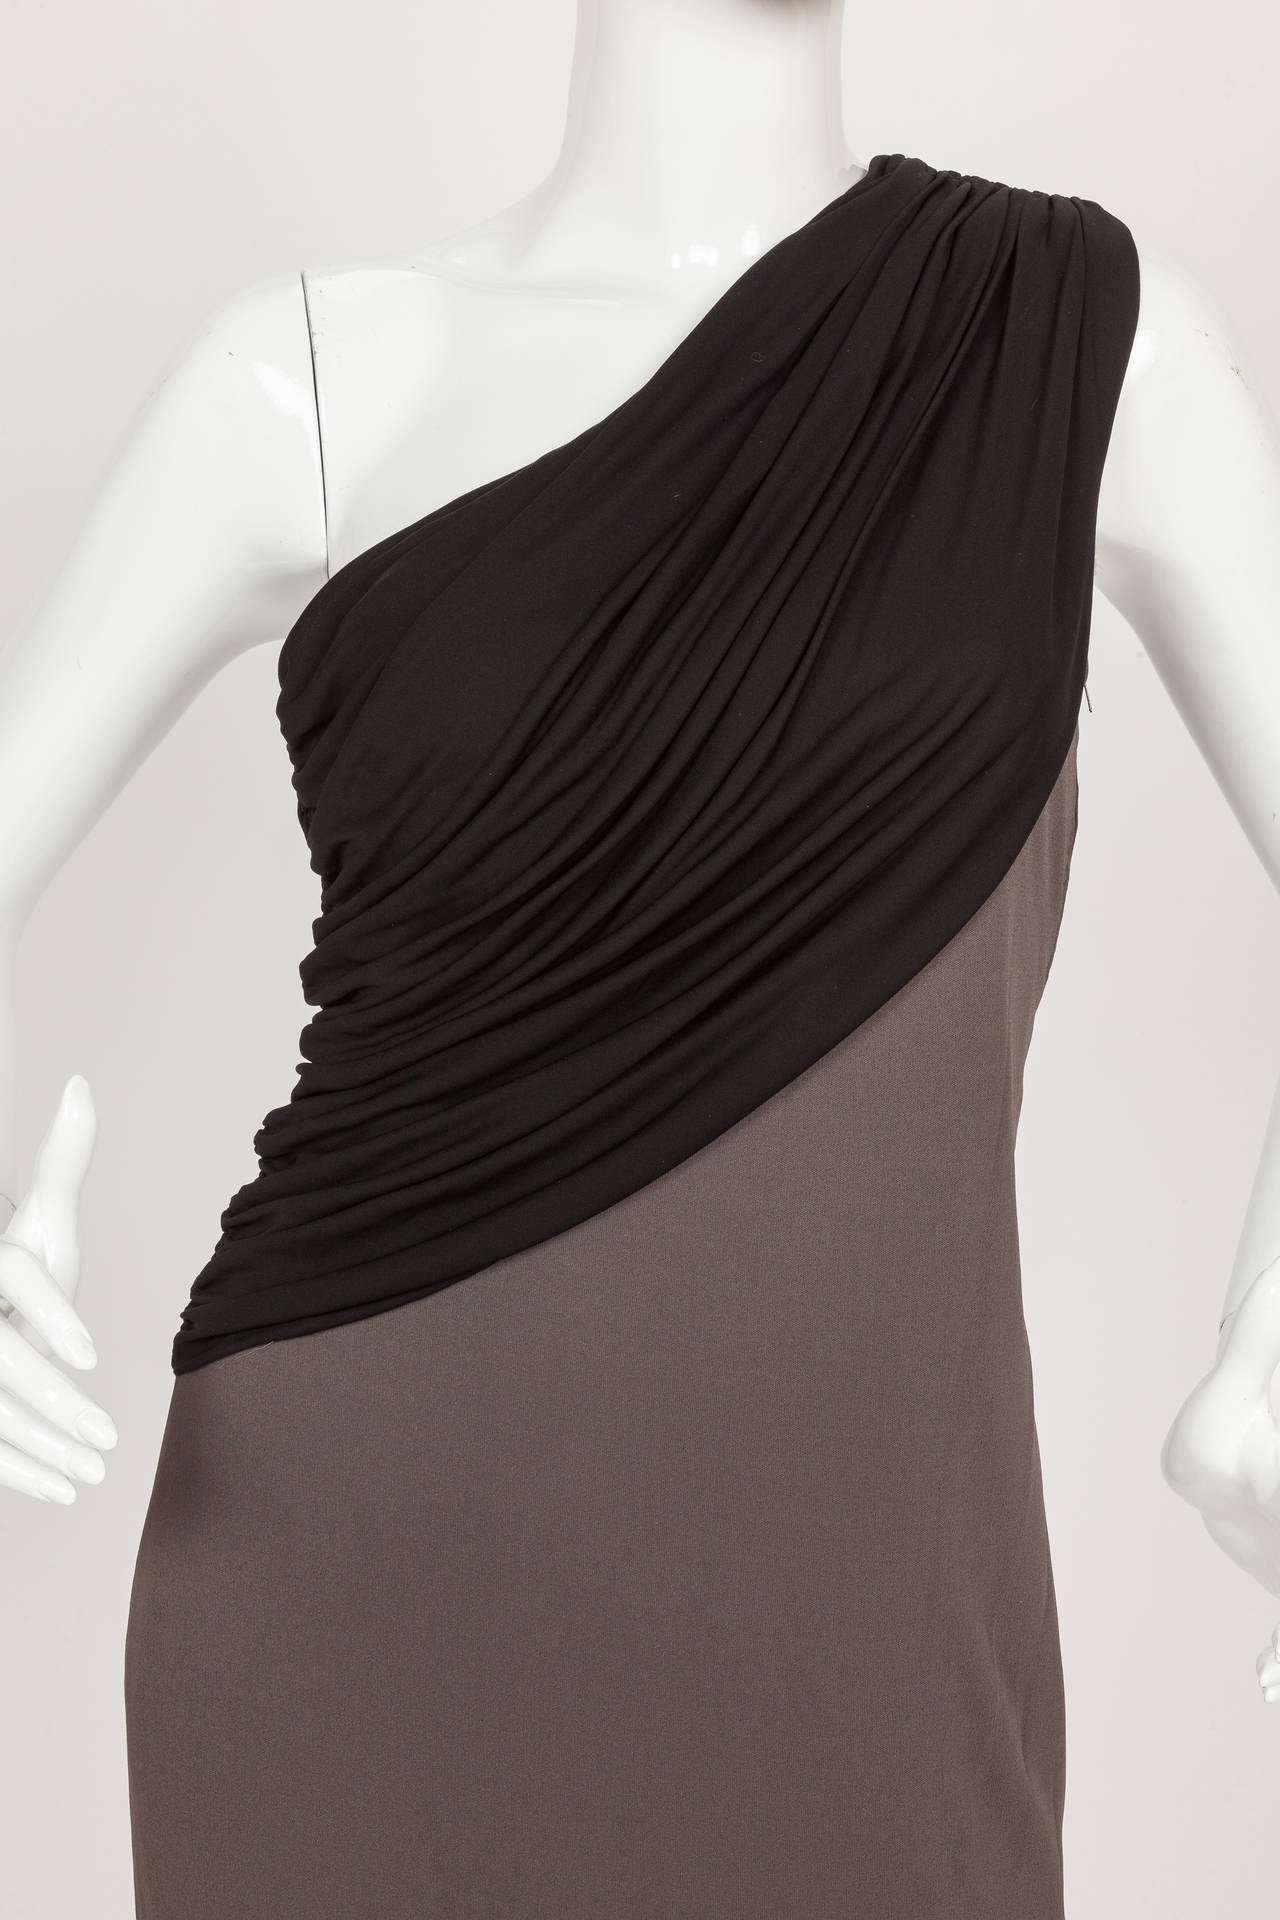 Une robe Madame Gres des années 1970, longueur genoux, une épaule, dans des tons de jersey de soie noir et gris ardoise. Le corsage est construit à partir d'une couche de jersey de soie noir plissé et drapé et la robe est doublée à l'intérieur avec